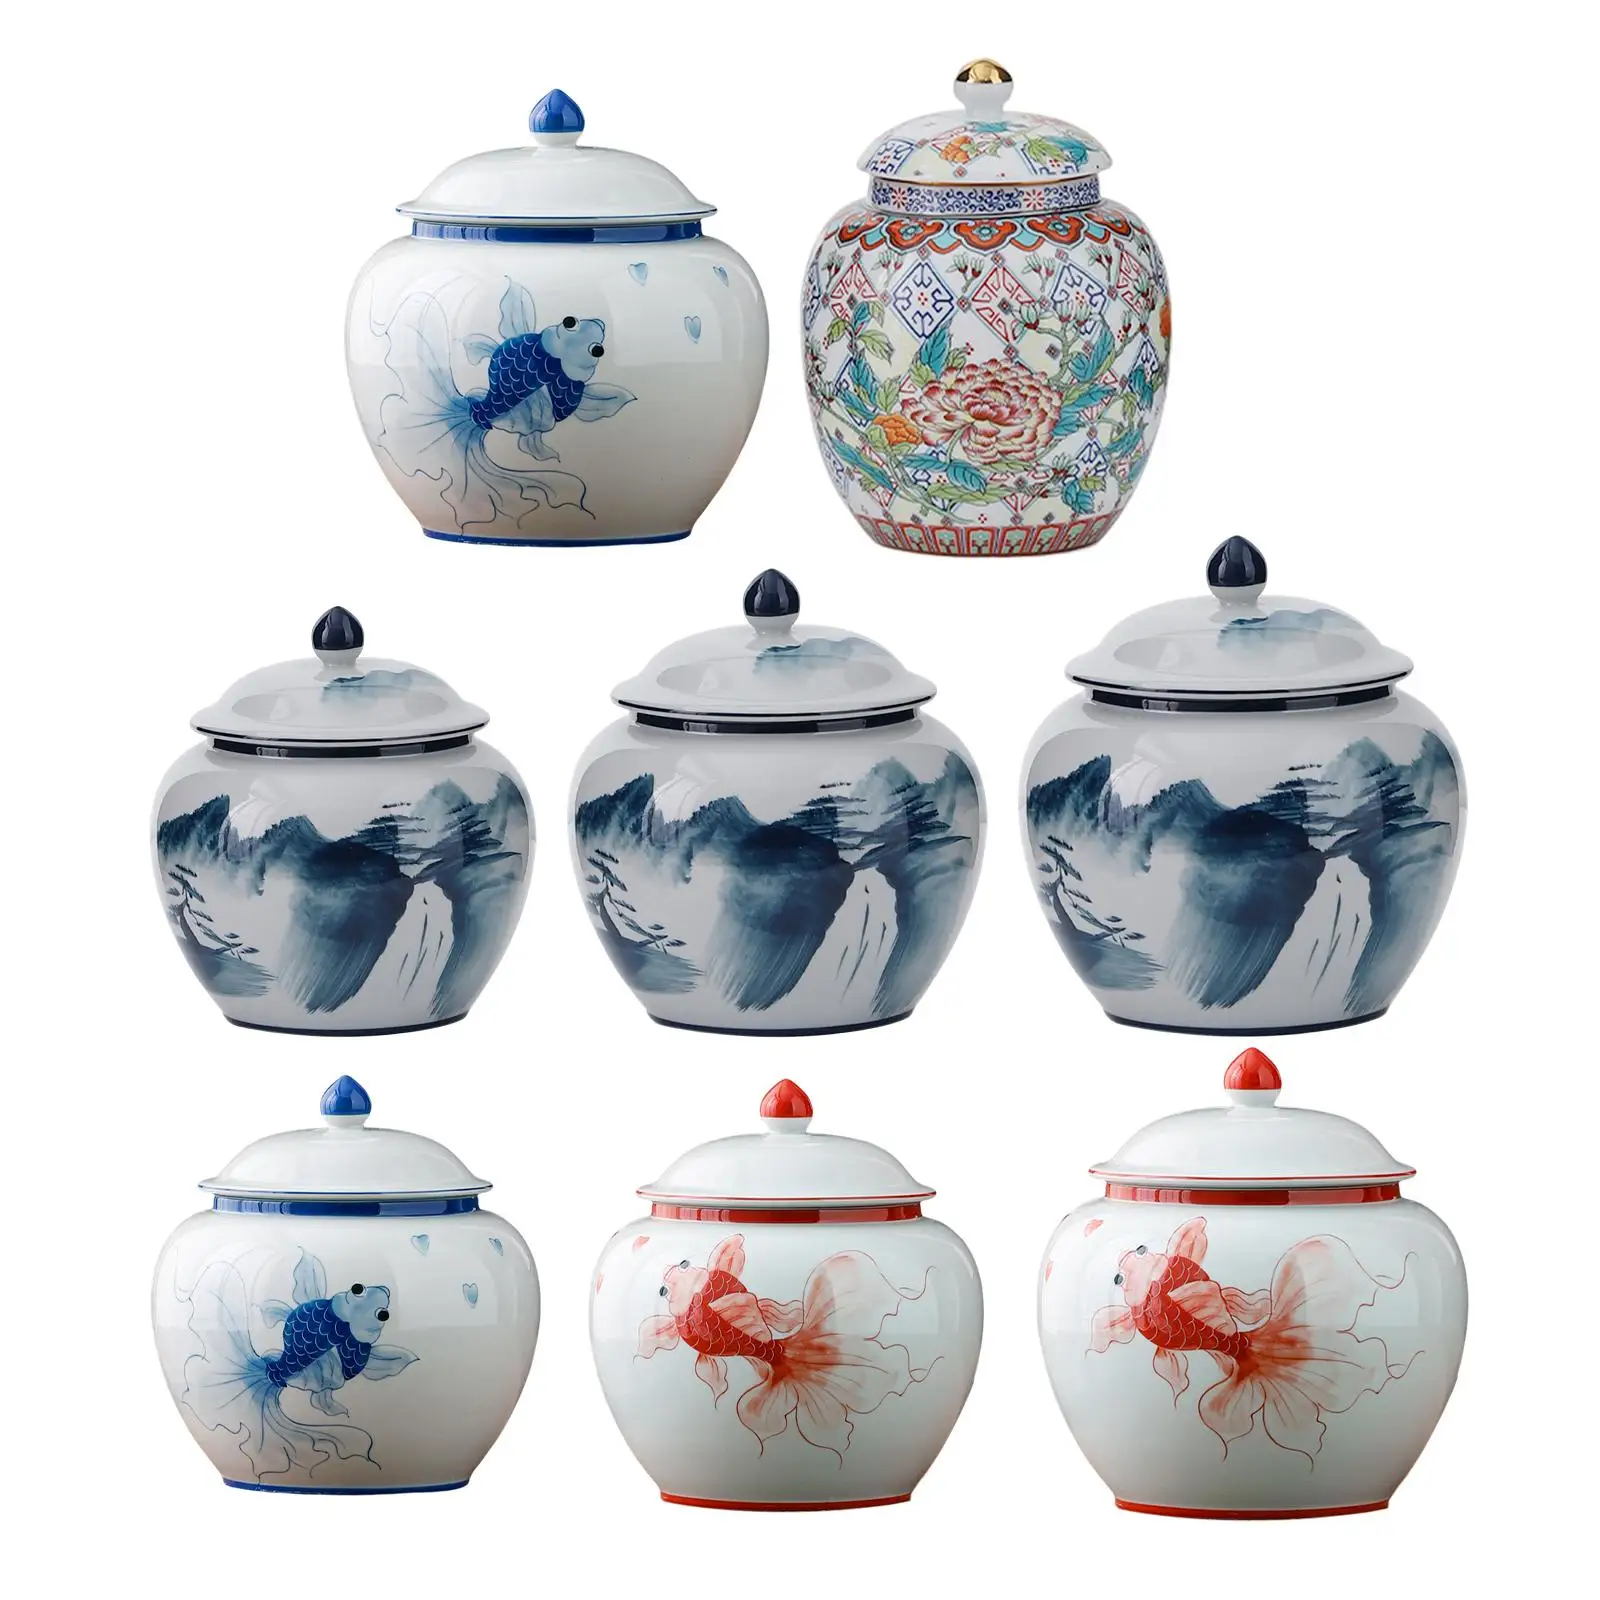 

Ceramic Ginger Jar Tea Storage Jar Porcelain Vase with Lid Versatile Delicate Asian Decor Centerpiece Glazed Enamel Traditional